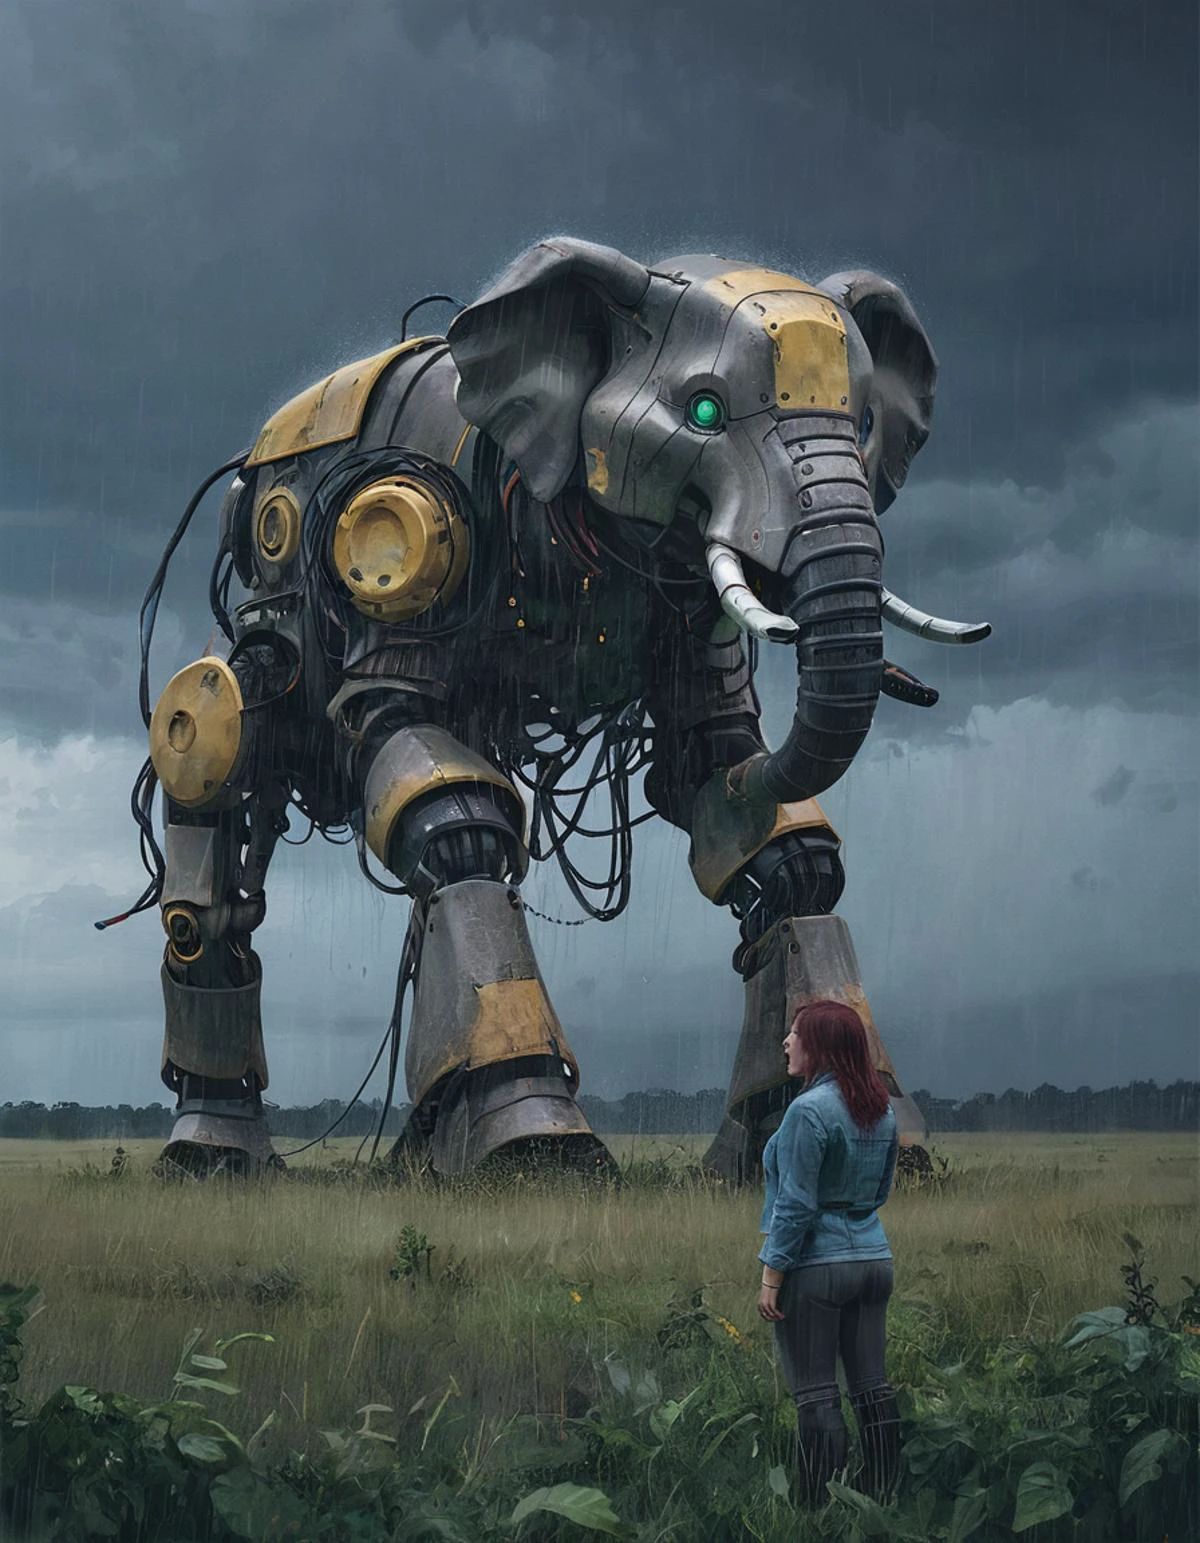 SSTA Riesen-Dickhäuter-Roboter, überwucherte Weide, neugierige Frau, Weitwinkelaufnahme, Regen, Sturm, Beleuchtung schafft eine dramatische Atmosphäre